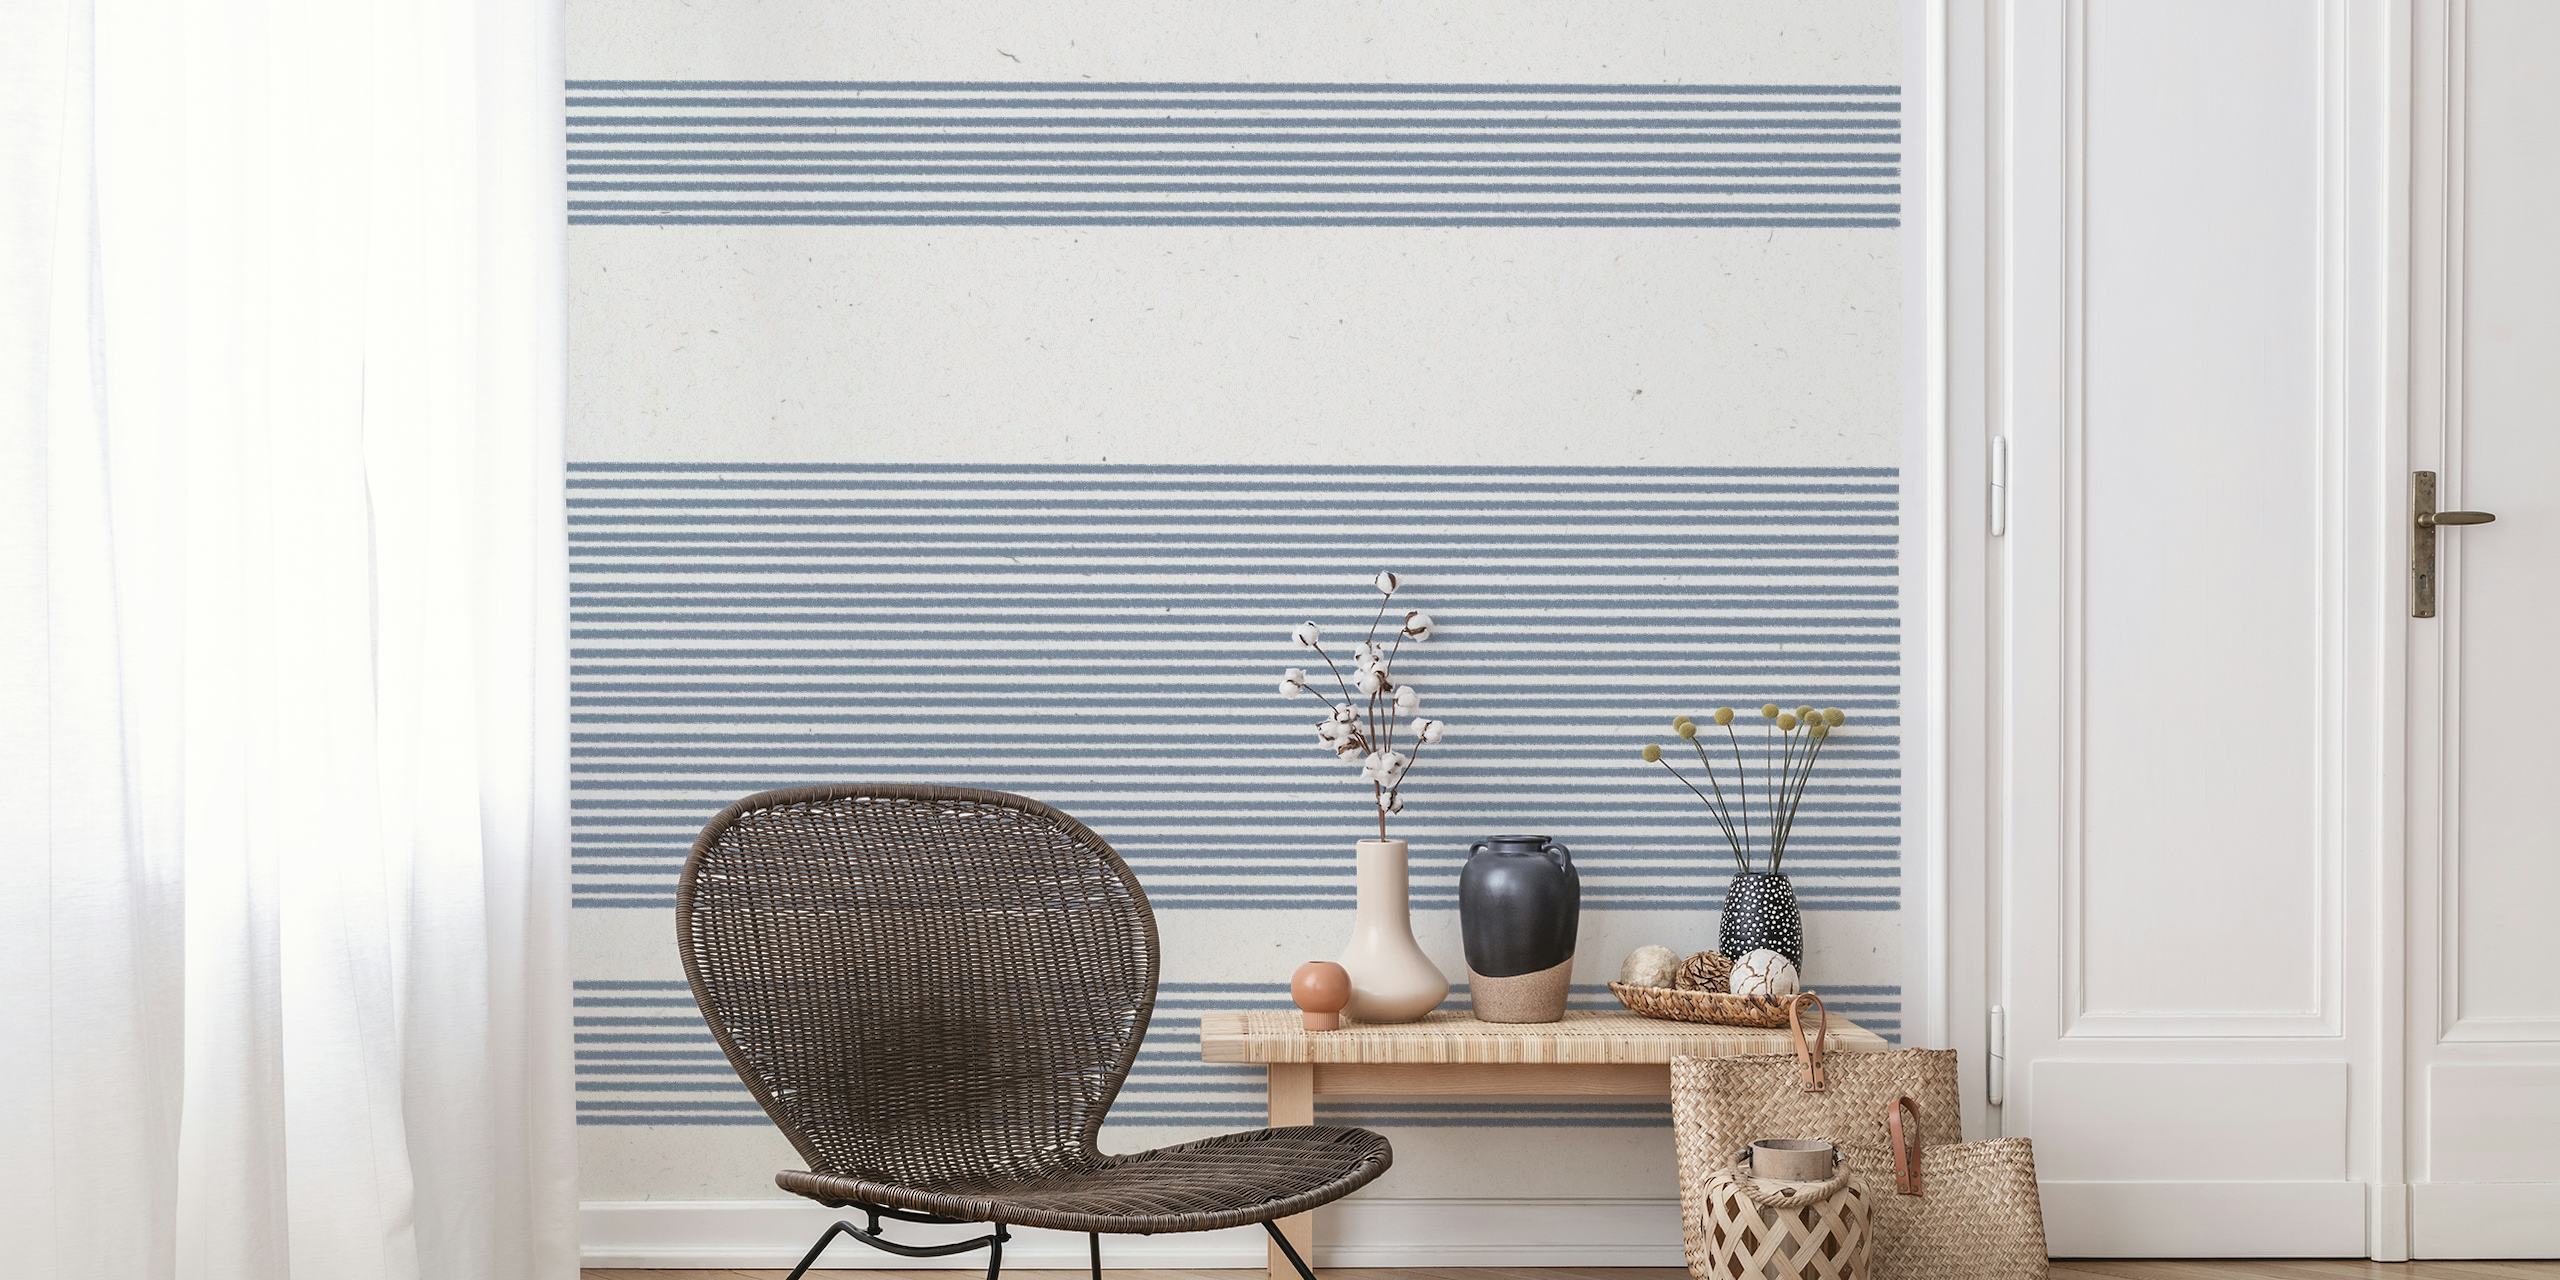 Modernes, minimalistisches Wandbild mit Japandi-Muster und ruhigem Streifendesign